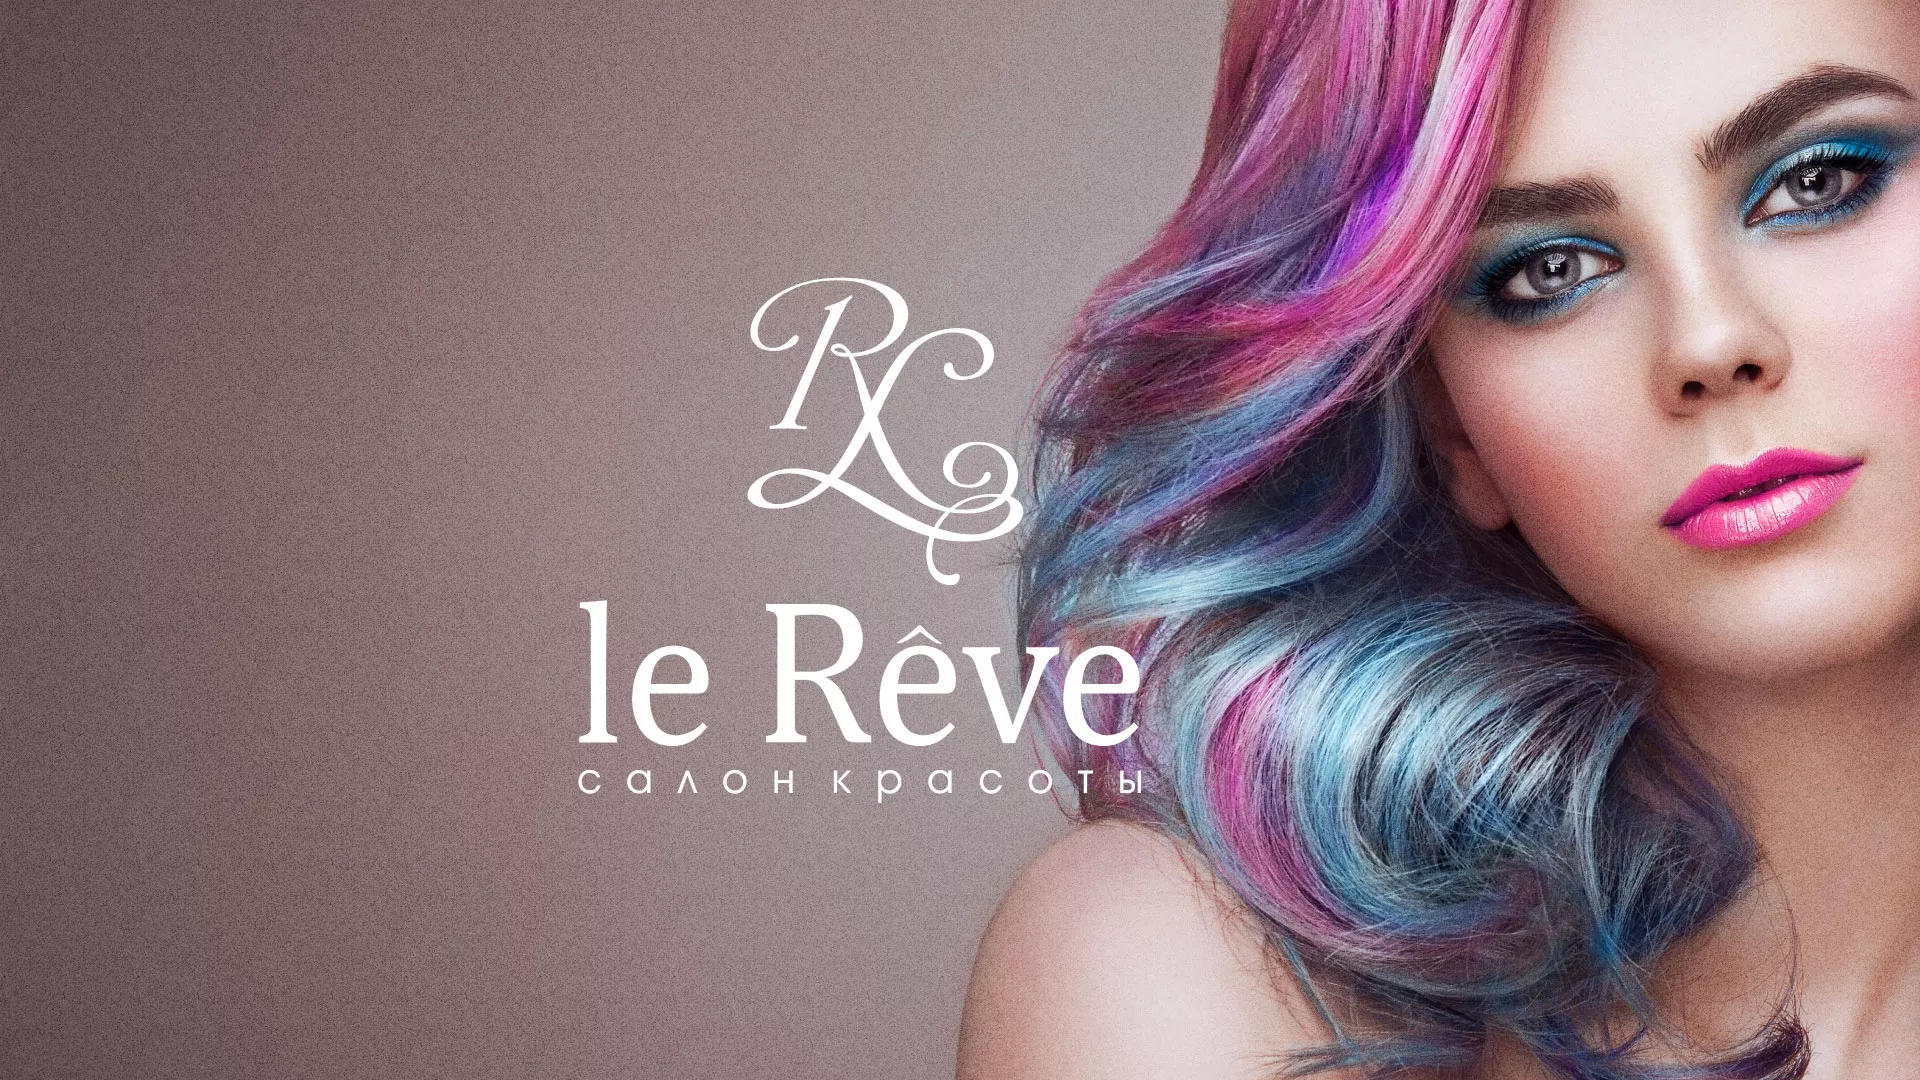 Создание сайта для салона красоты «Le Reve» в Георгиевске